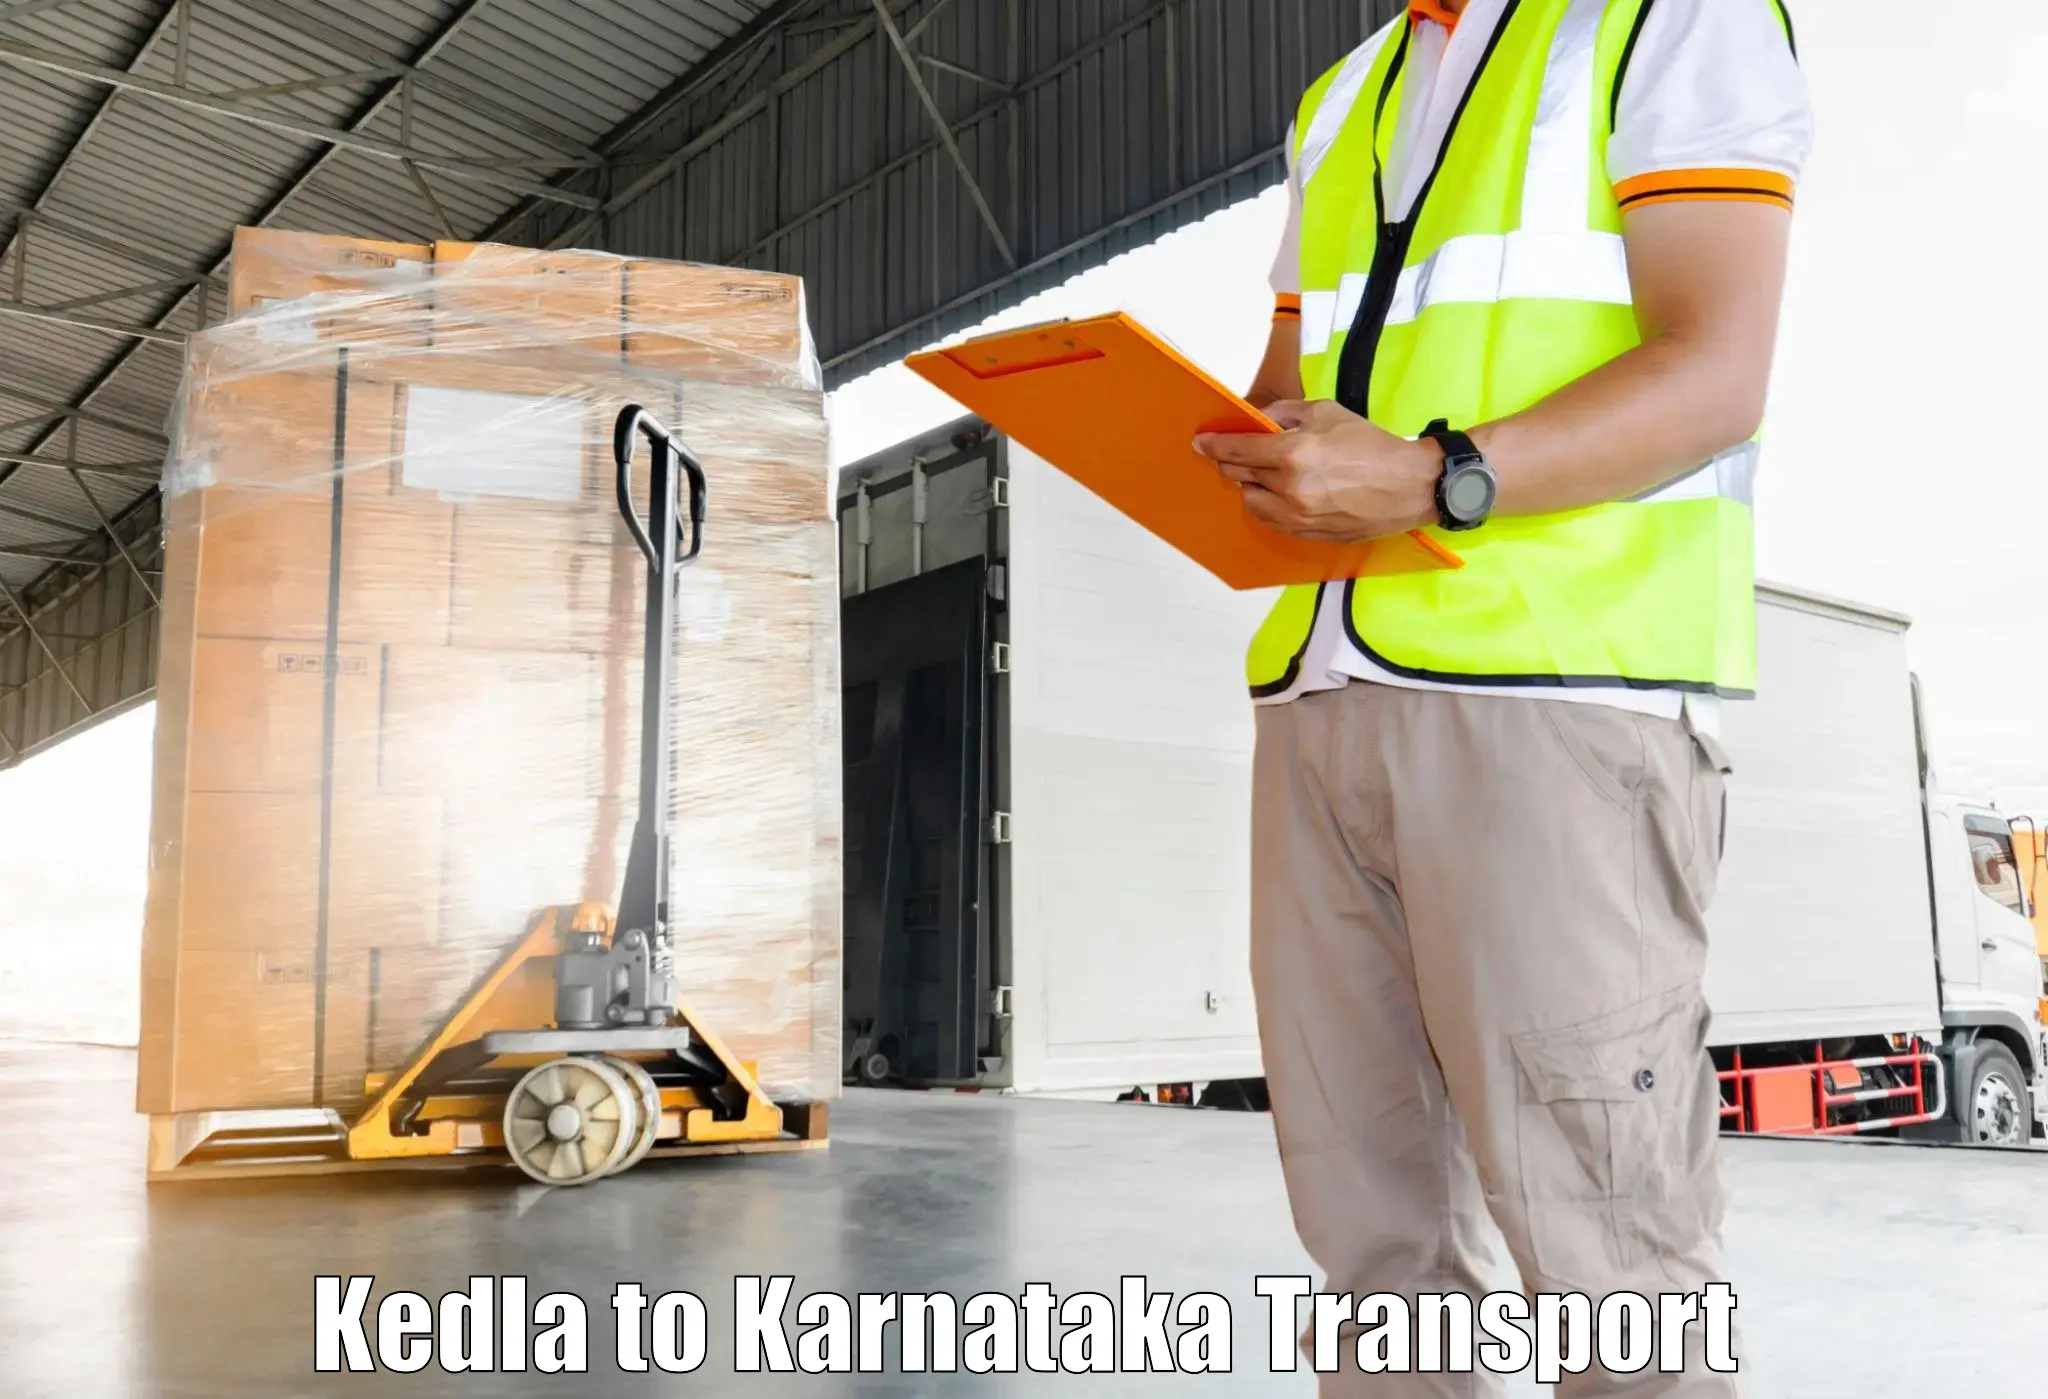 Luggage transport services Kedla to Saraswathipuram